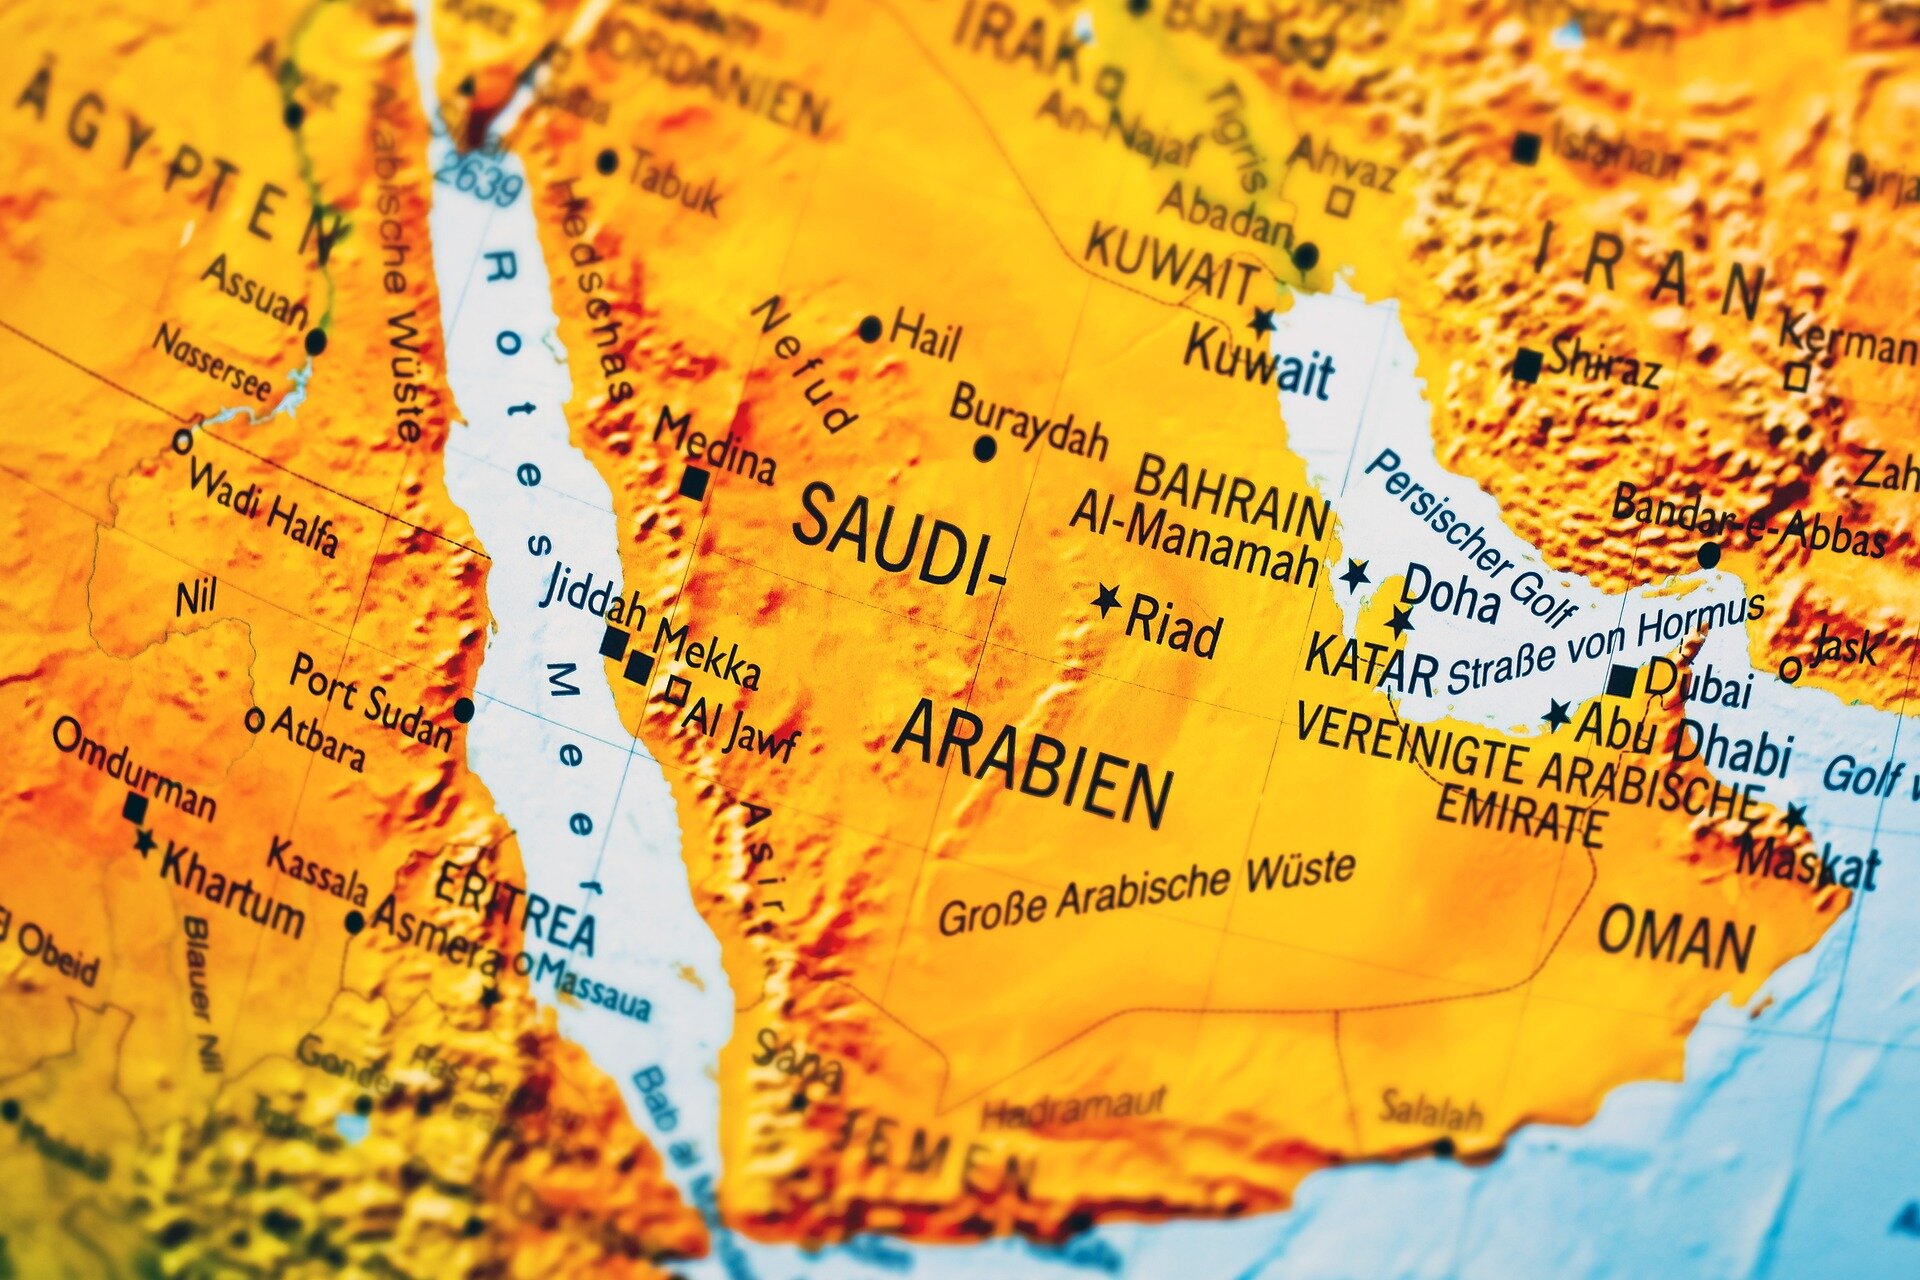 دراسة توضح أثر التعليم في علاج الصرع في المملكة العربية السعودية